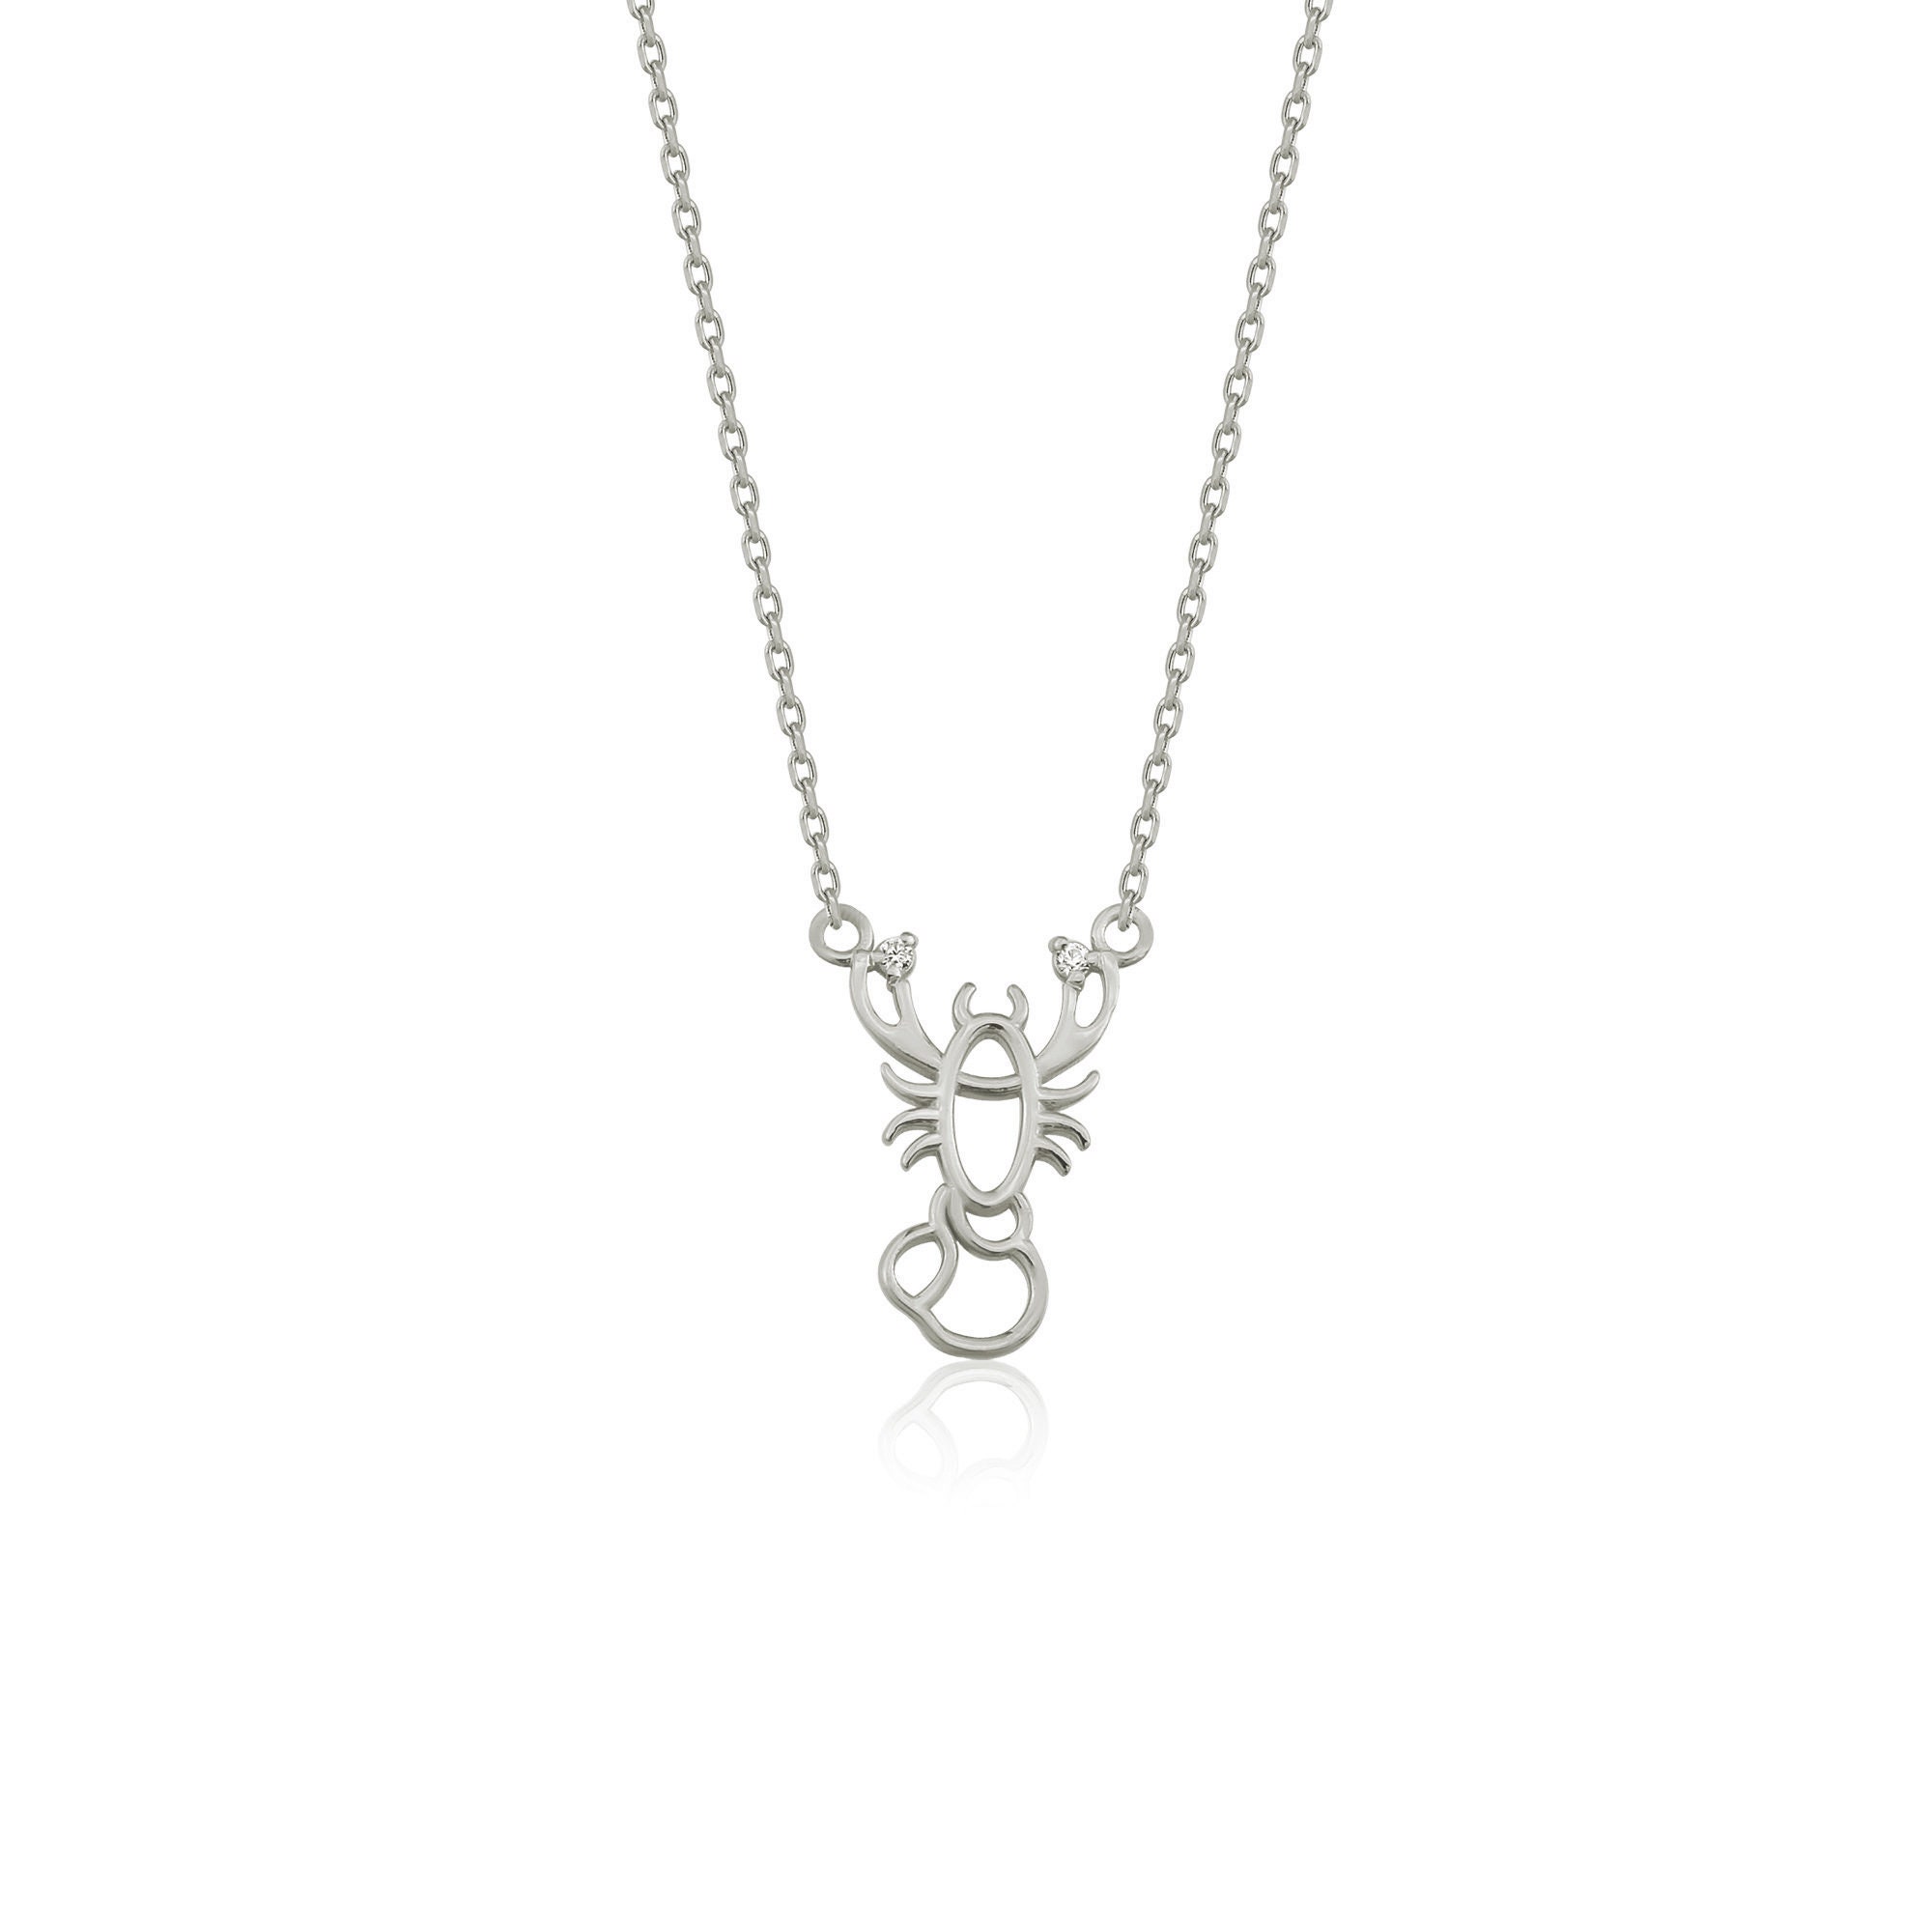 Jewellery Zodiac Star Sign Necklace Silver Scorpio Latelita, 51% OFF